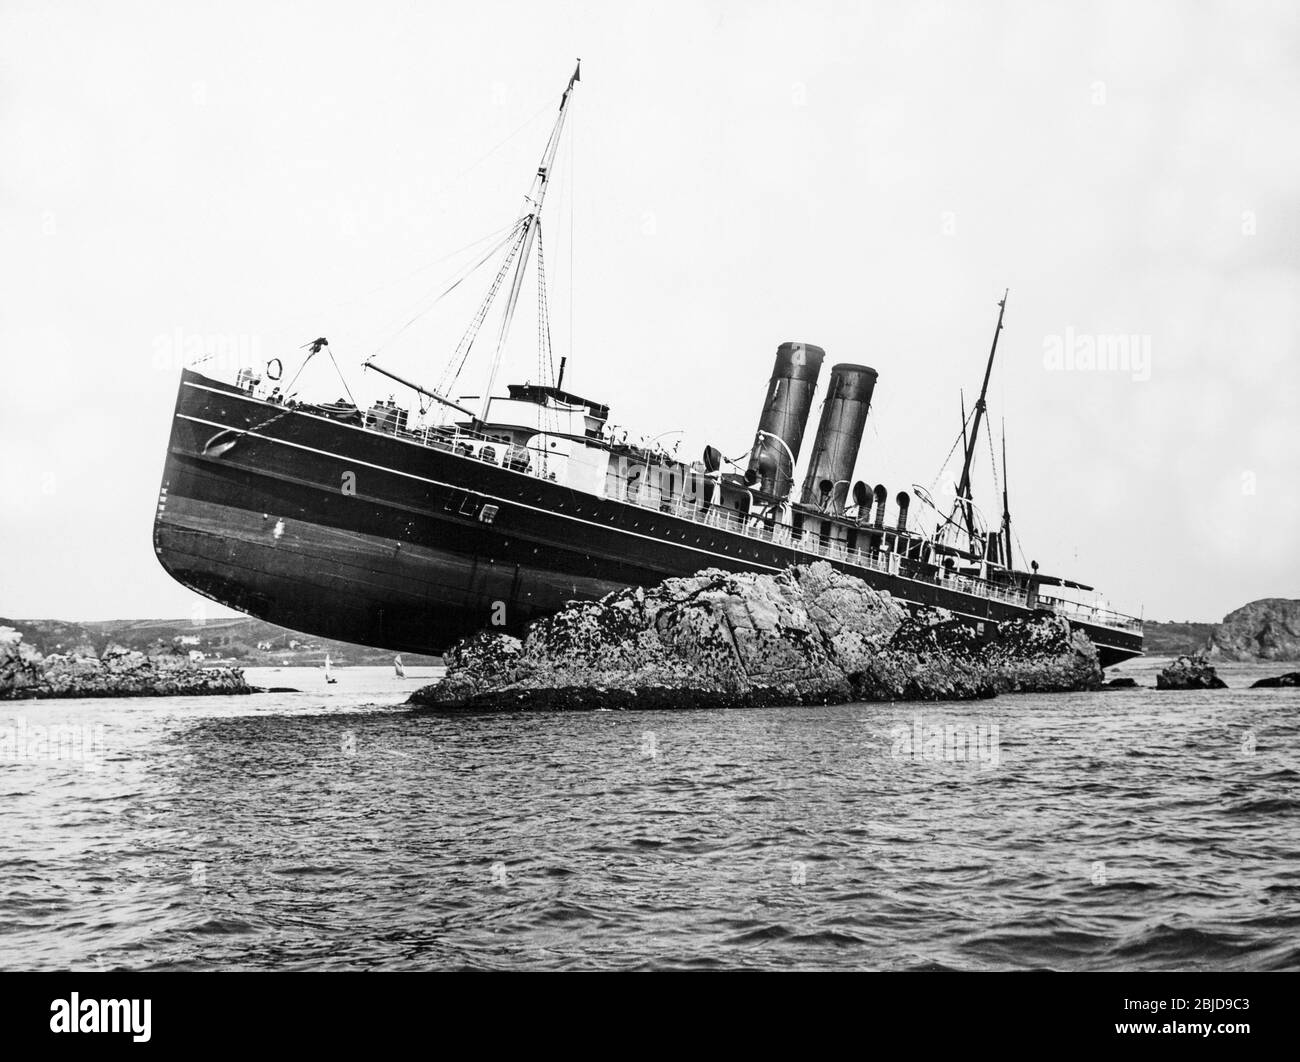 Photo noir et blanc du début du XXe siècle montrant un bateau de croisière à vapeur qui s'est enorné sur certaines roches. Le navire a deux entonnoirs, mais n'a pas de nom. Banque D'Images